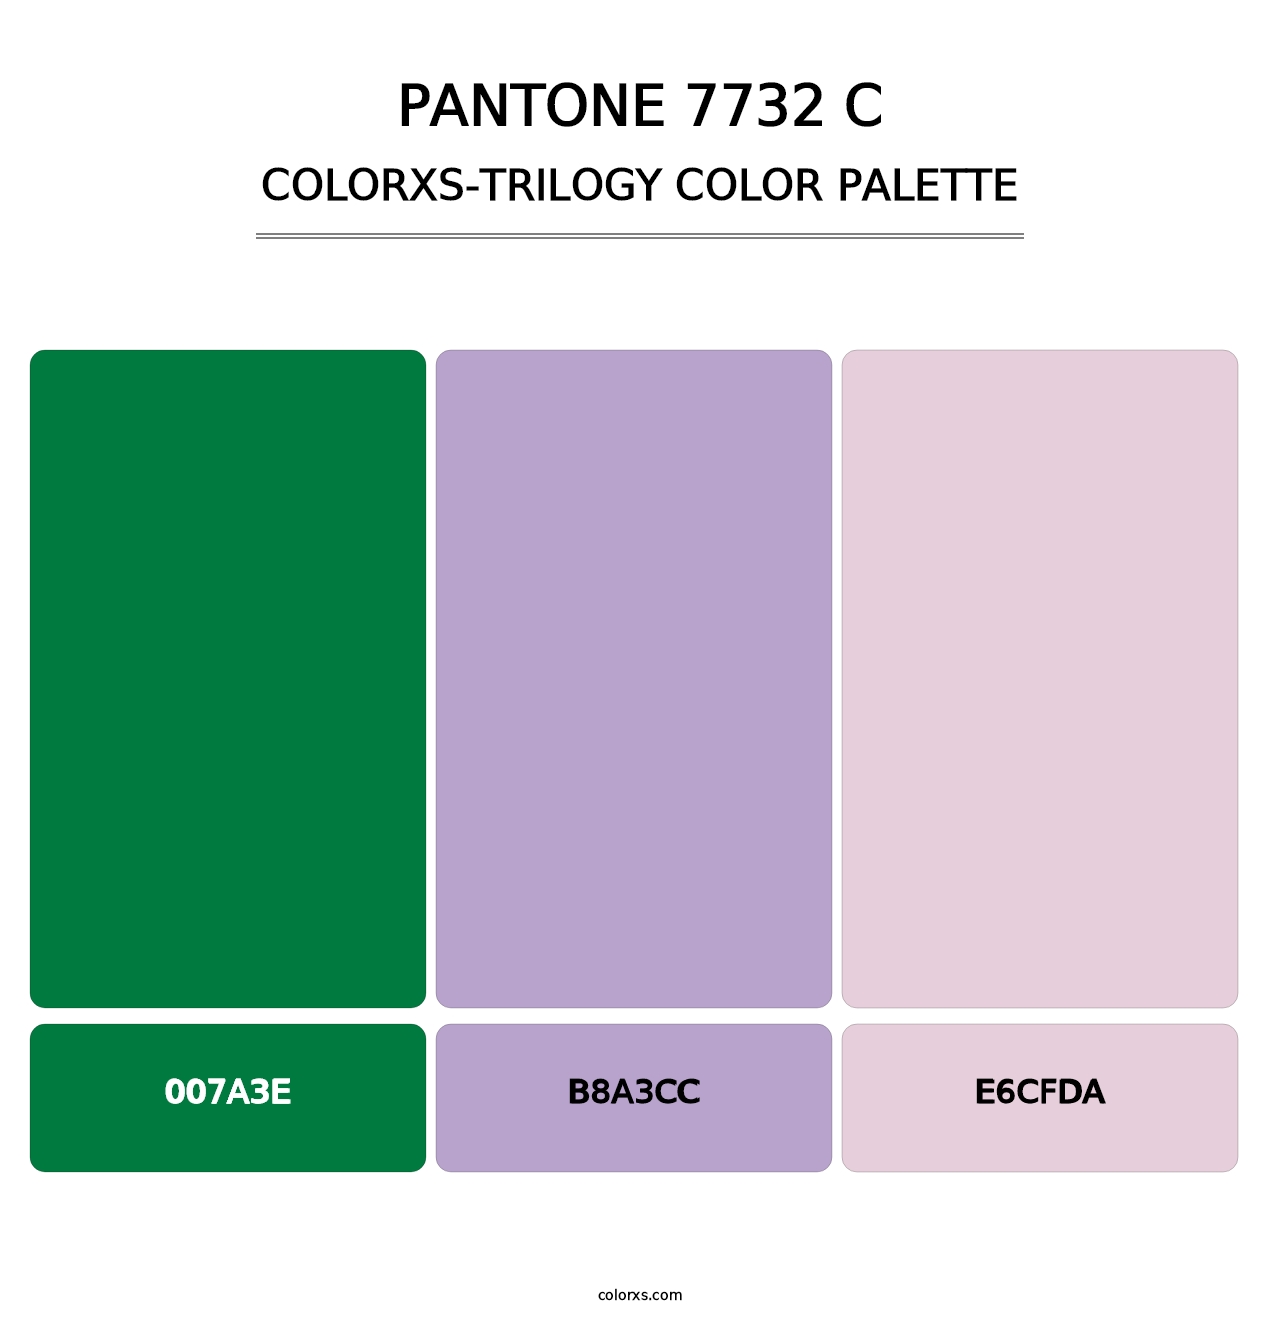 PANTONE 7732 C - Colorxs Trilogy Palette